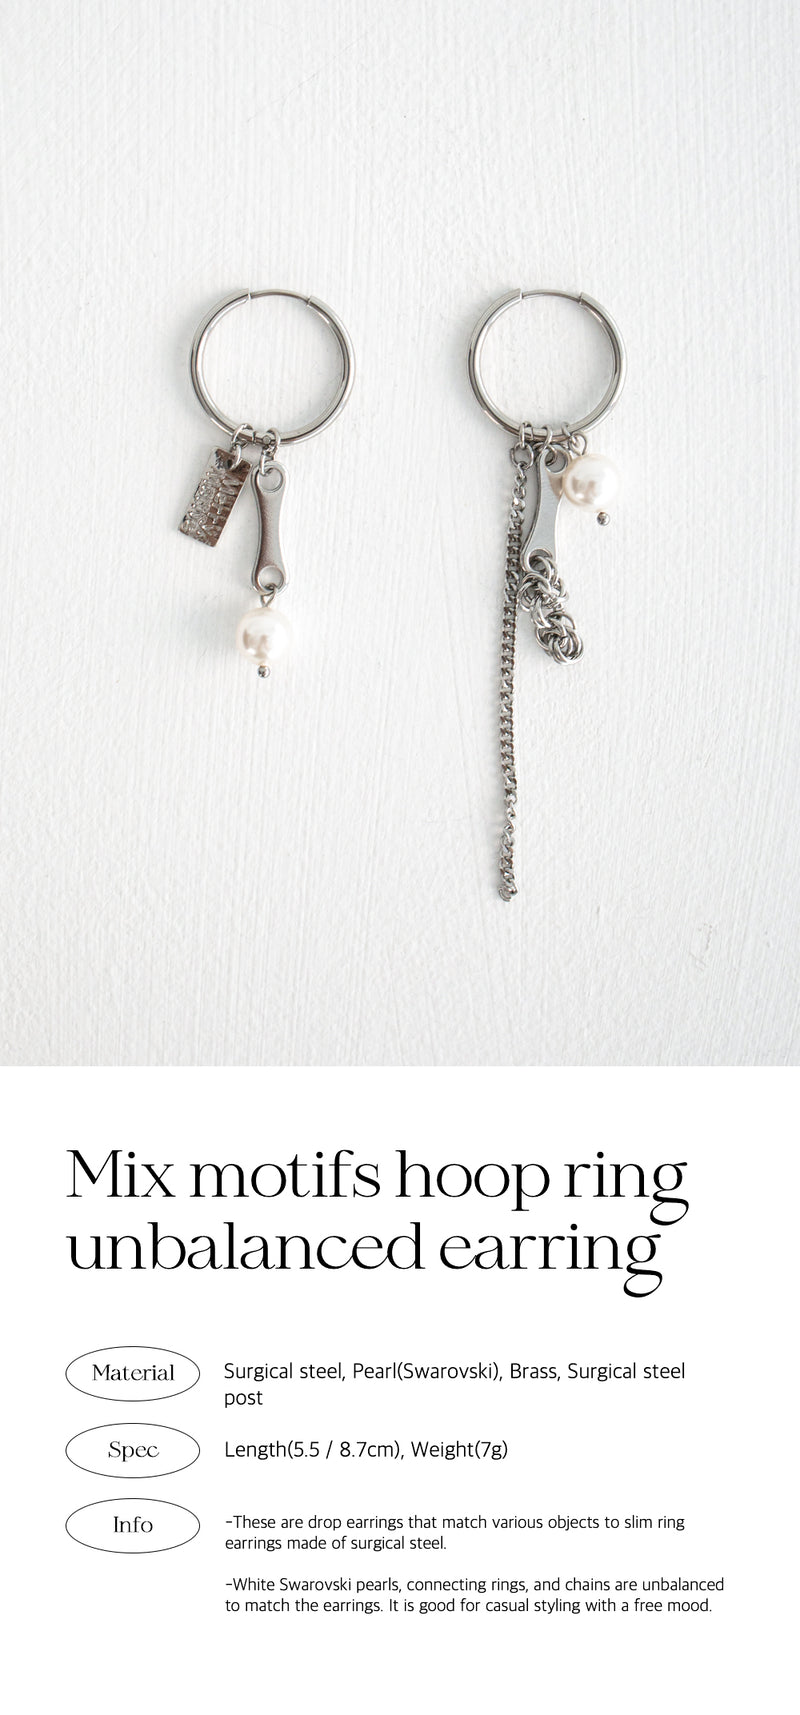 ミックスモチーフフープリングアンバランスピアス/Mix motifs hoop ring unbalanced earring